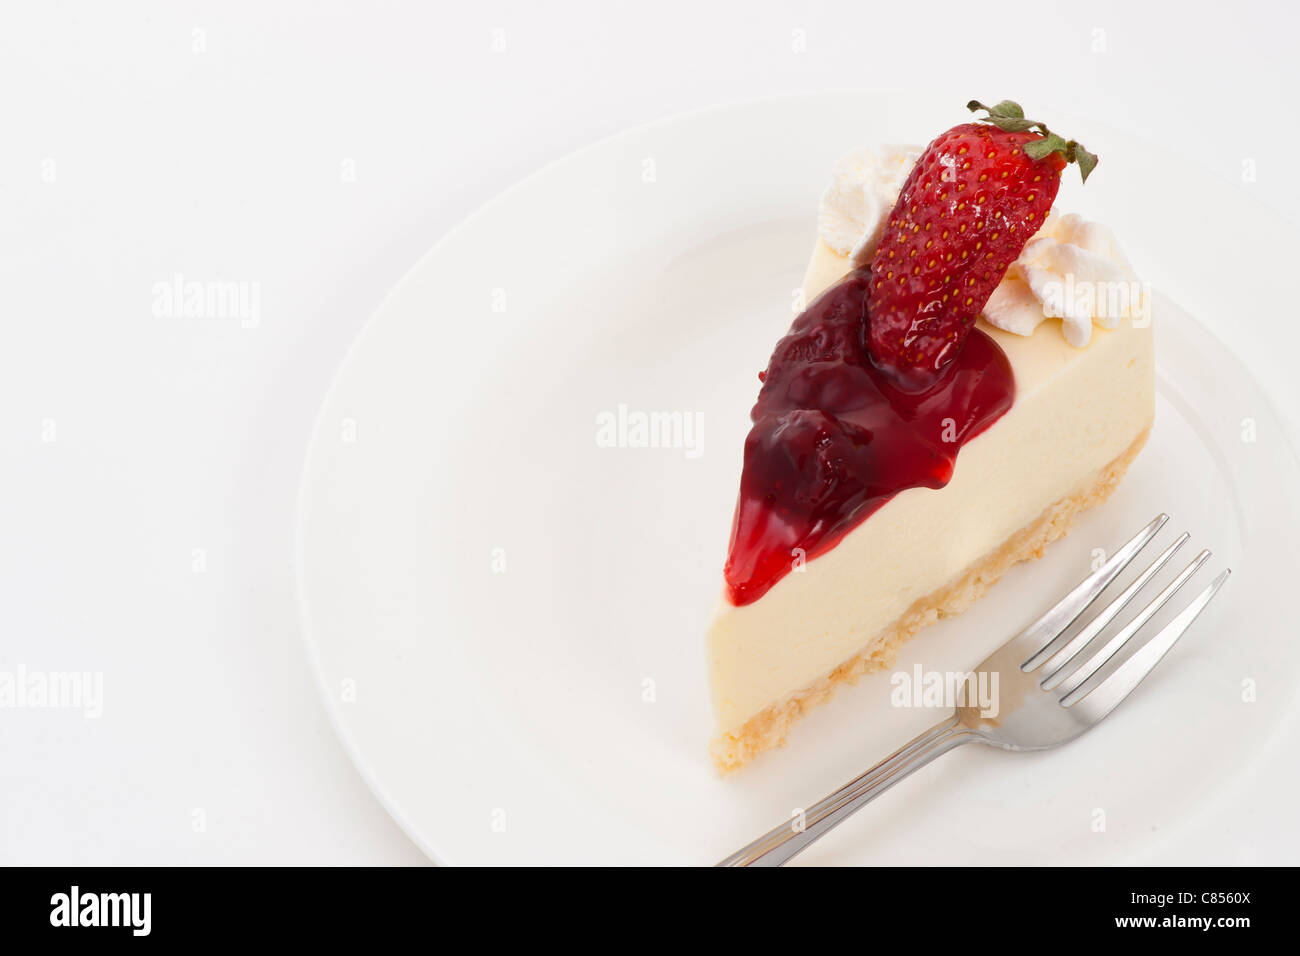 Gâteau au fromage aux fraises sur fond blanc et plaque Banque D'Images